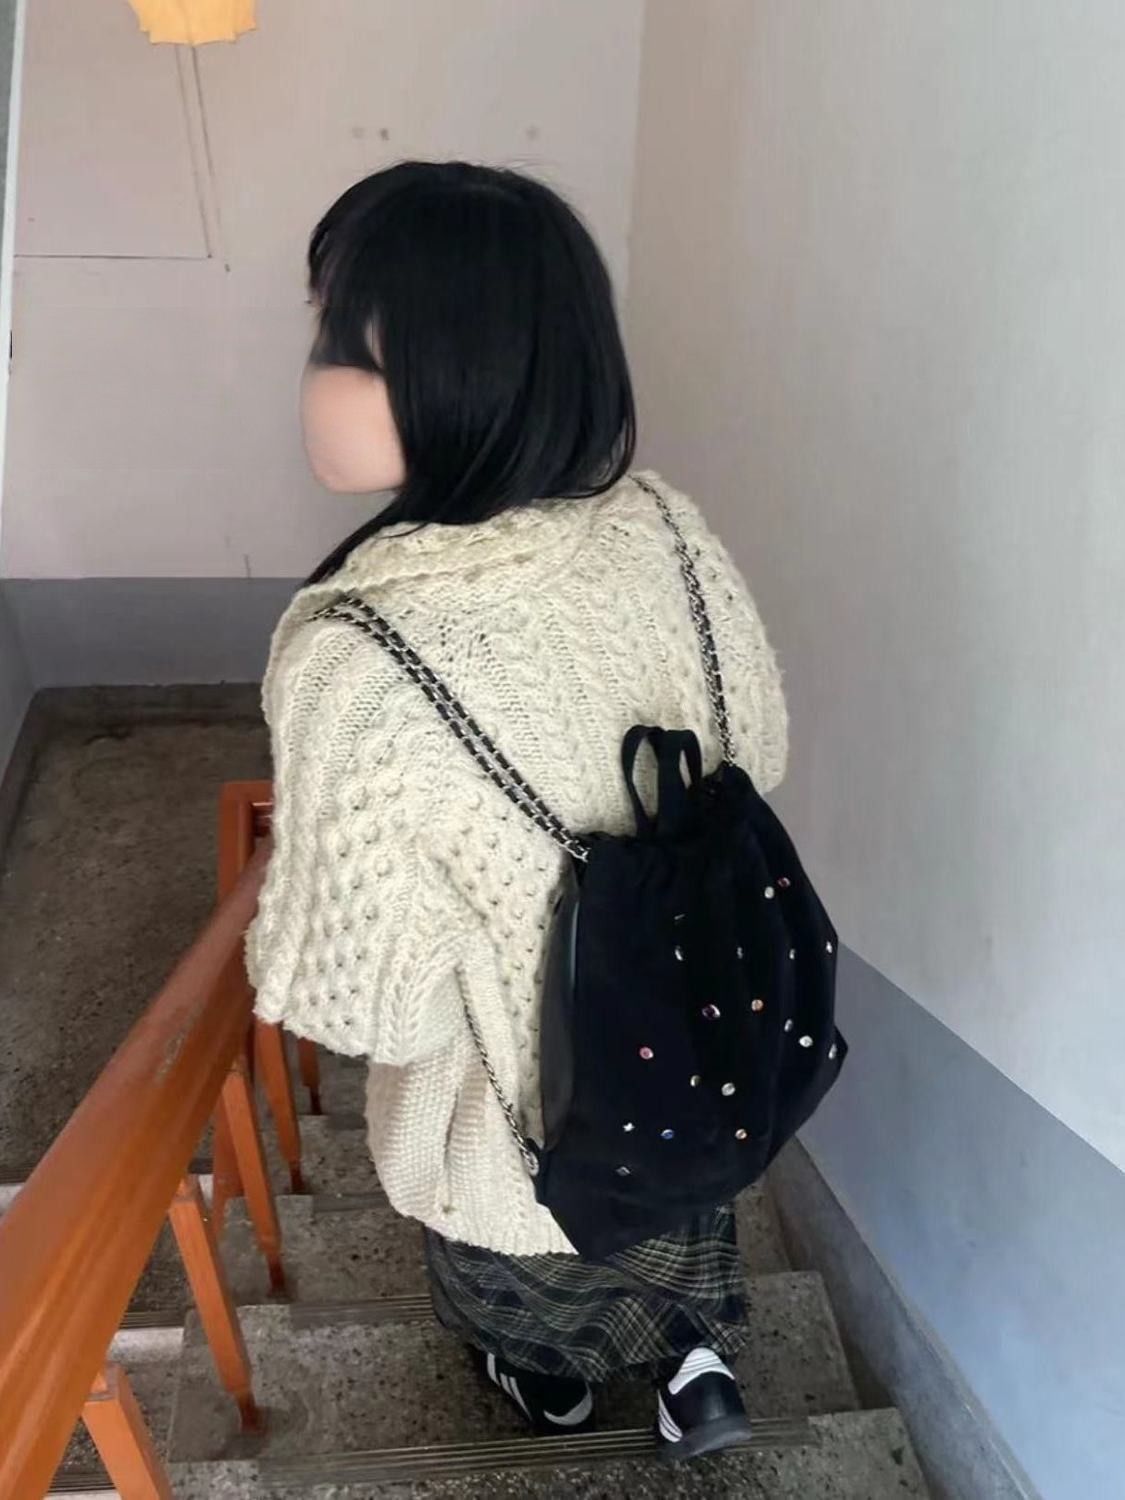 Korean niche women's bag matte velvet stitching color gemstone chain backpack drawstring handbag